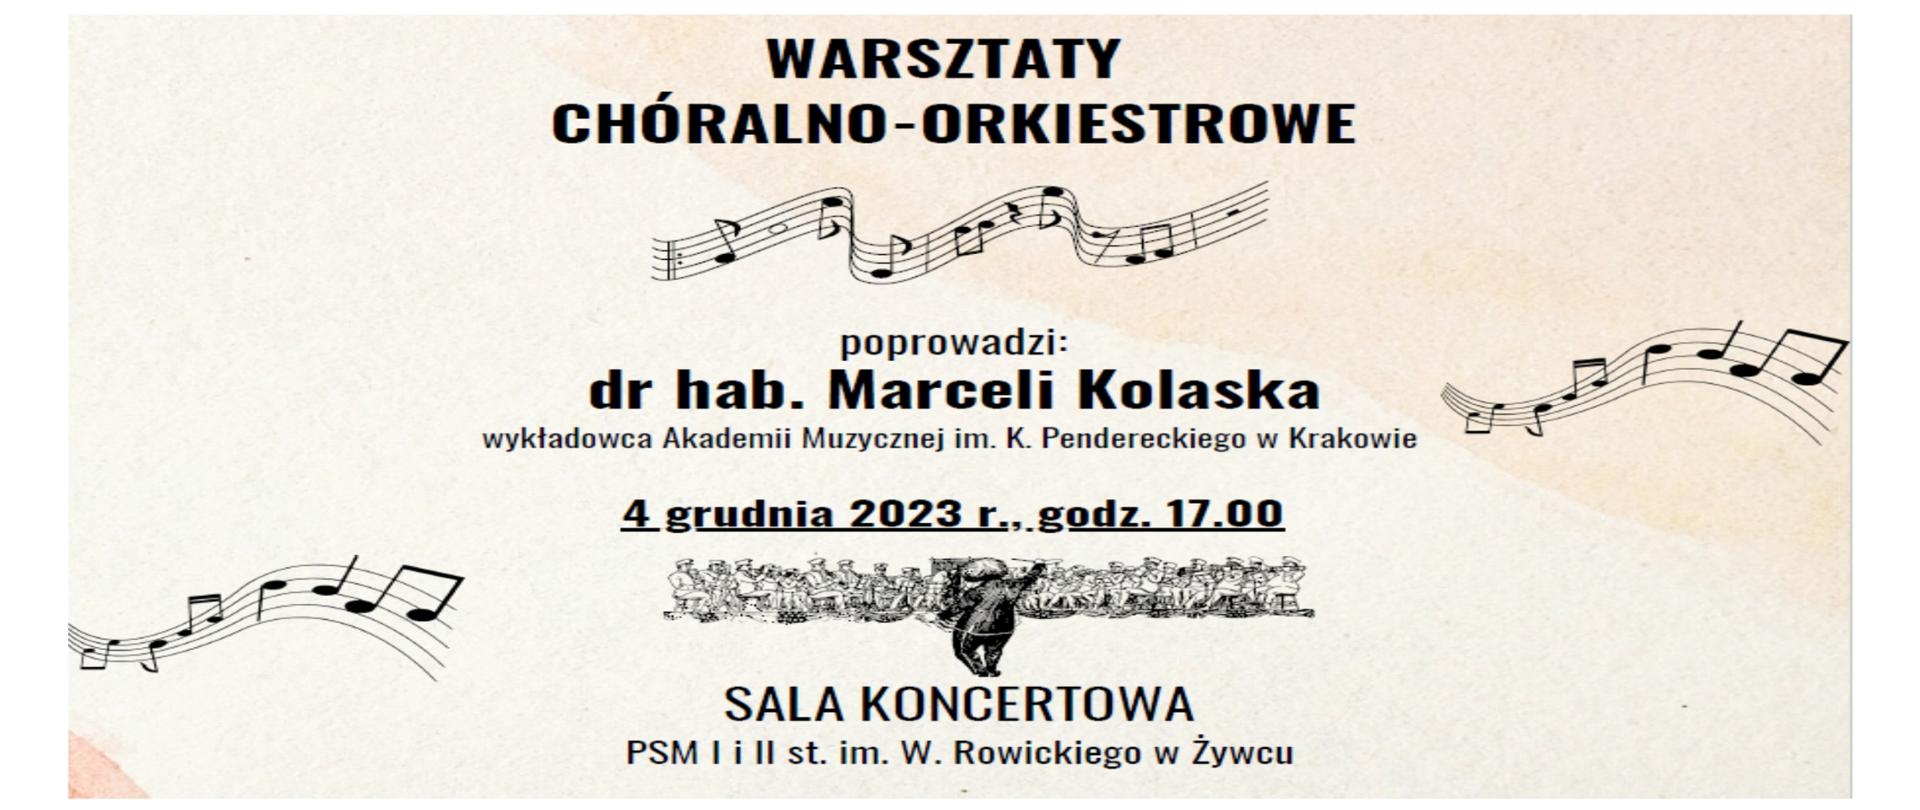 Warsztaty chóralno-orkiestrowe